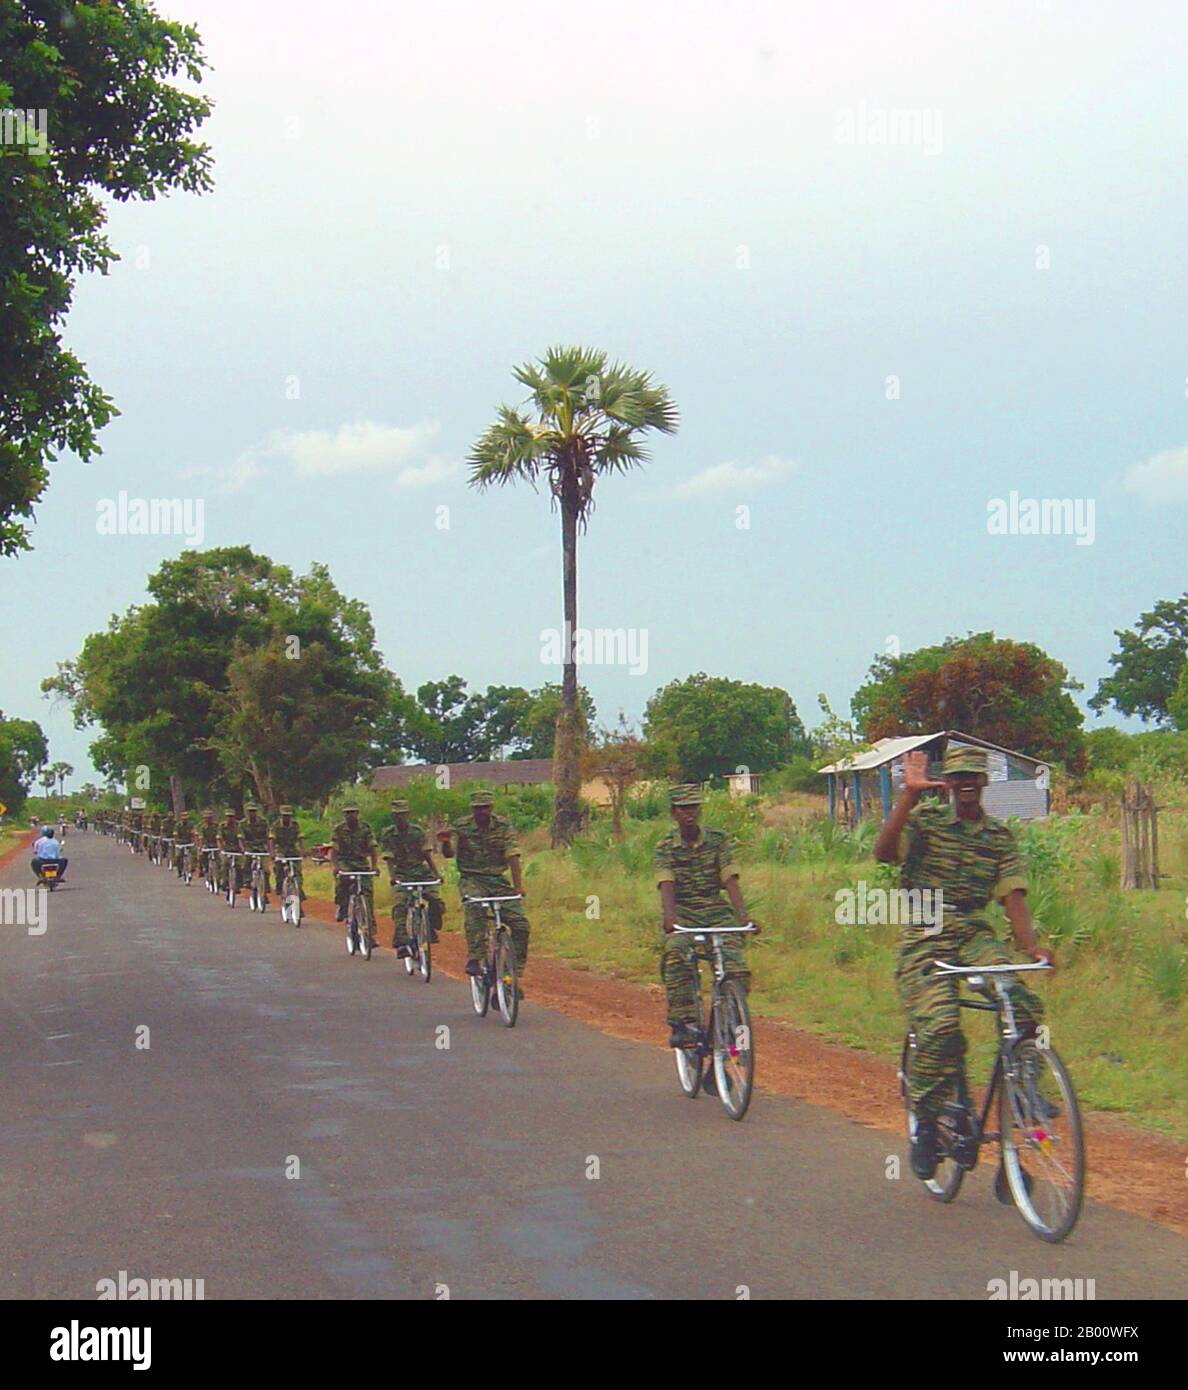 Sri Lanka: Ein Tamil Tiger (LTTE) Fahrradzug in der Nähe von Kilinochchi, Mai 2004. Foto von Qz10 (CC BY-SA 3.0 Lizenz). Der Bürgerkrieg in Sri Lanka begann am 23. Juli 1983 und entwickelte sich schnell zu einem ständigen Aufstand gegen die Regierung Colombo durch die Liberation Tigers of Tamil Eelam (LTTE), allgemein bekannt als die Tamil Tigers, und andere wenige Rebellengruppen, Die im Norden und Osten der Insel für die Schaffung eines unabhängigen tamilischen Staates namens Tamil Eelam kämpften. Nach einem 26-jährigen Militärfeldzug besiegte das srilankische Militär im Mai 2009 die Tamil Tigers. Stockfoto